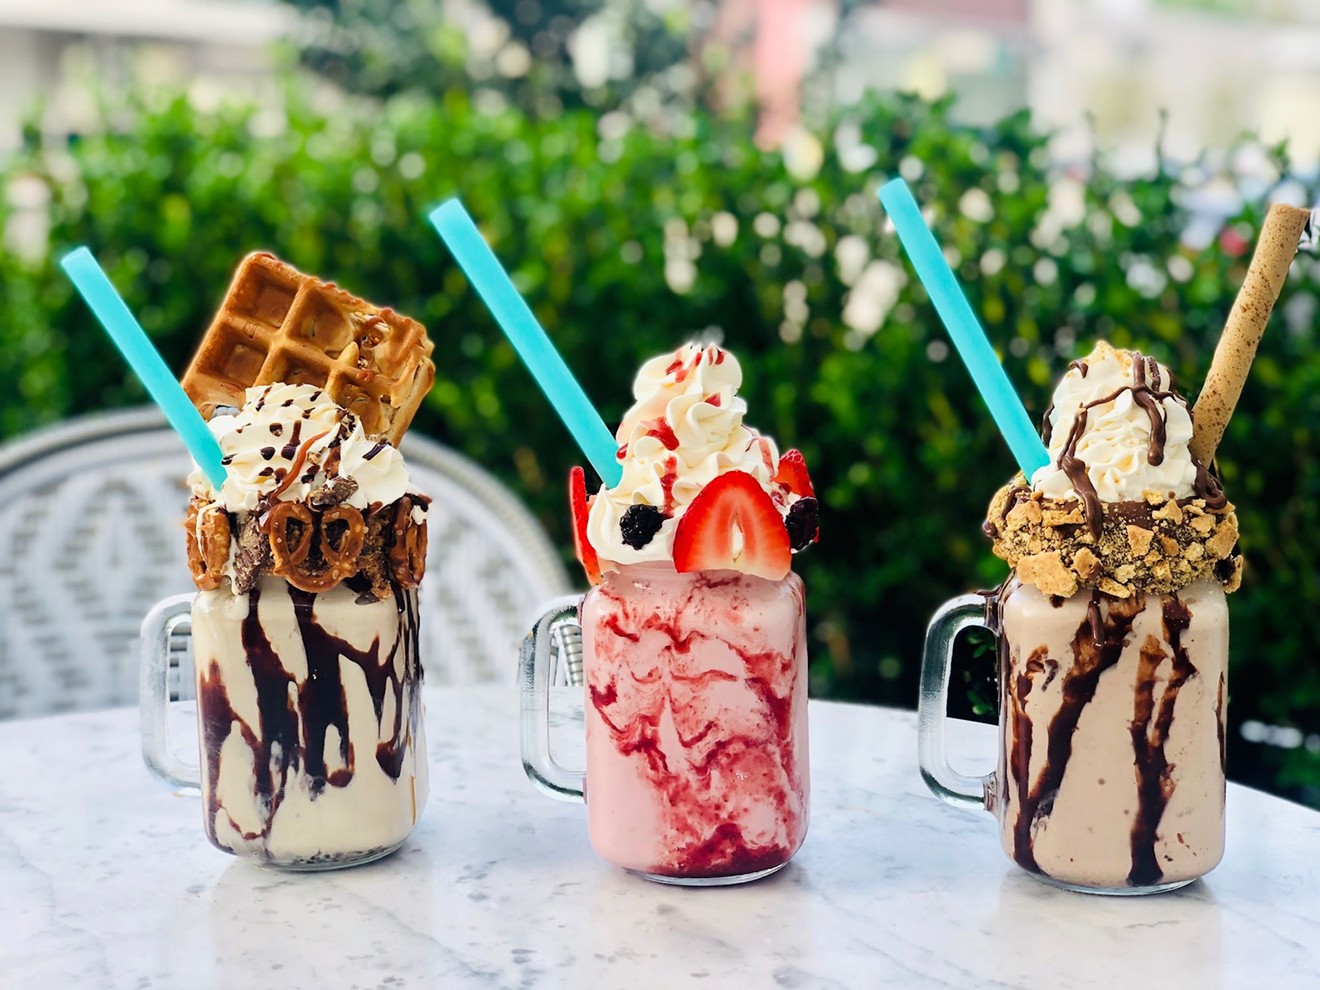 Milkshakes at Sweet Paris are Instagram-worthy.